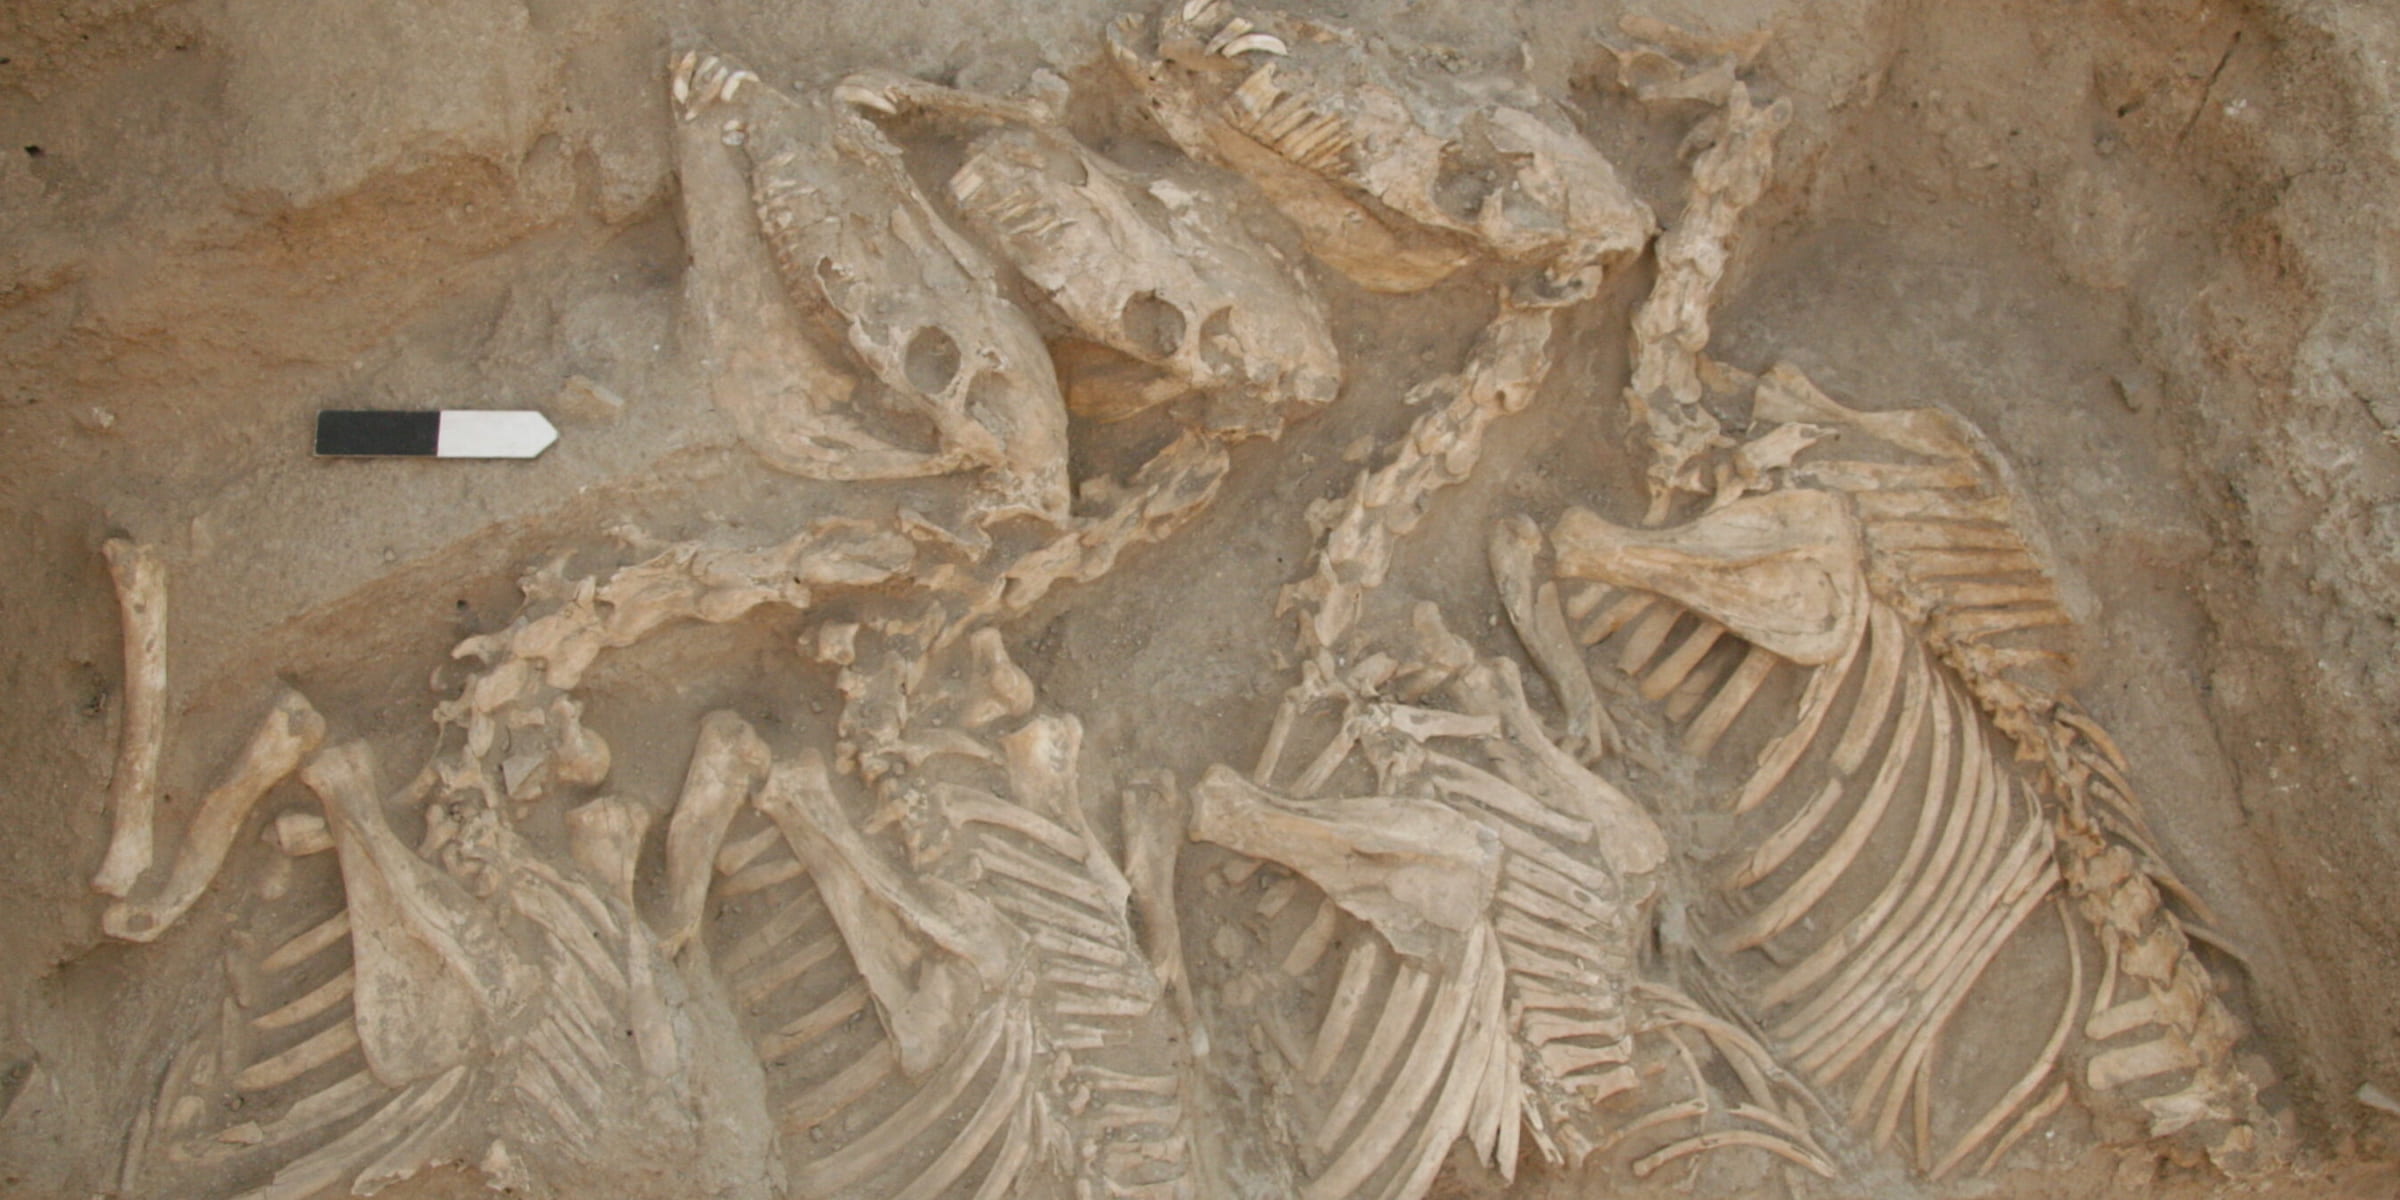 メソポタミアで史上初のハイブリッド種が開発されていた